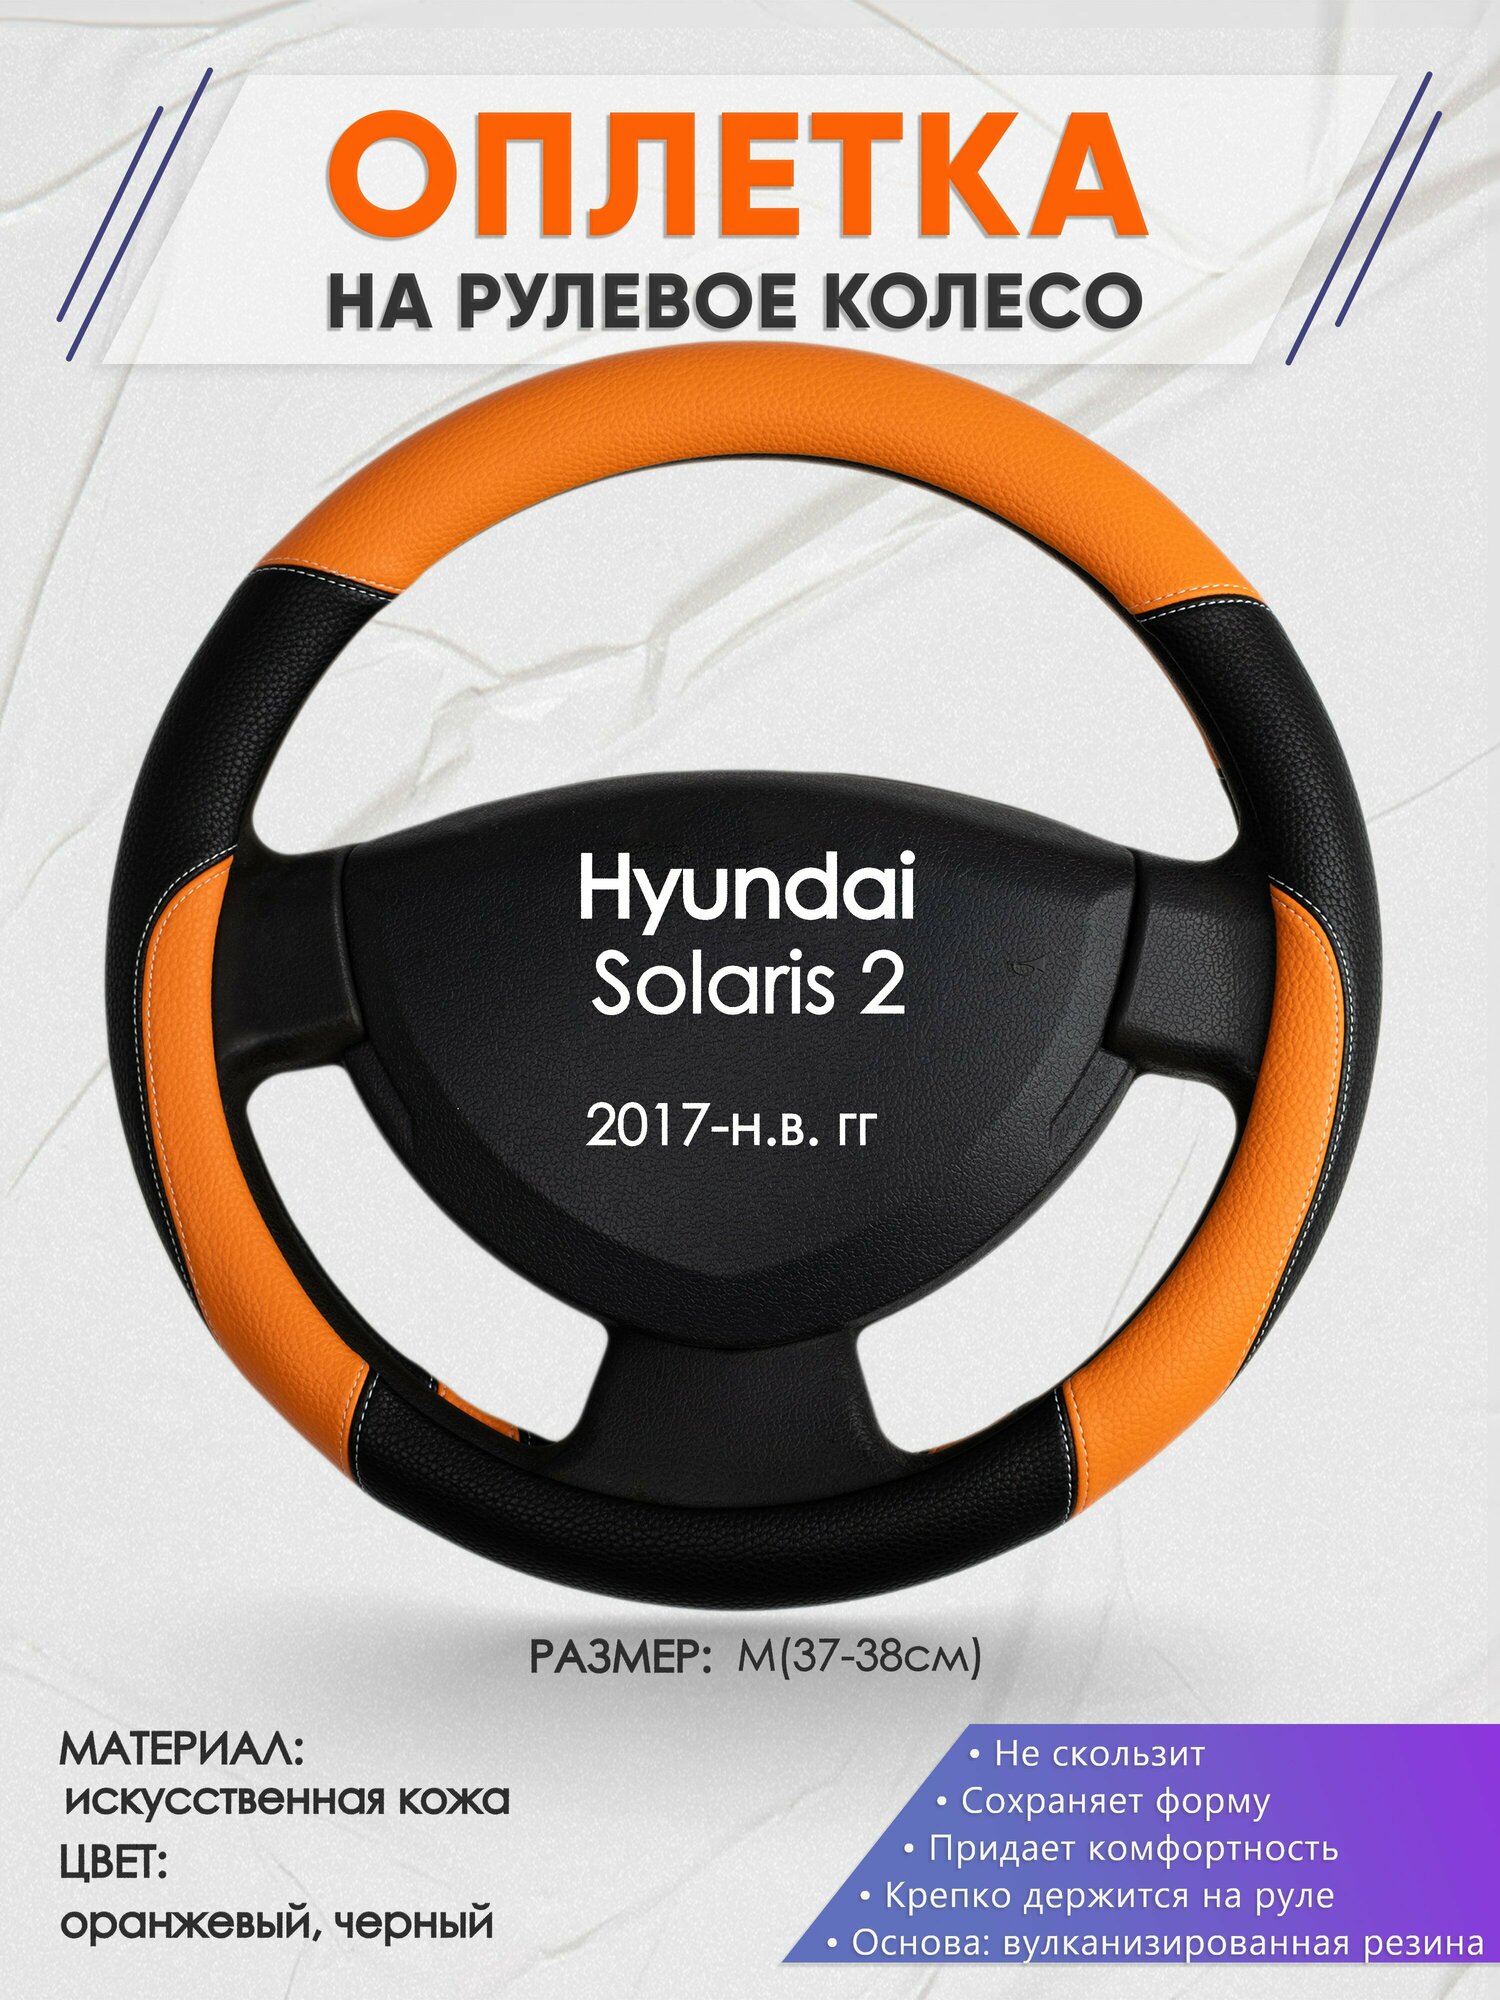 Оплетка на руль для Hyundai Solaris 2(Хендай Солярис 2) 2017-н. в M(37-38см) Искусственная кожа 79